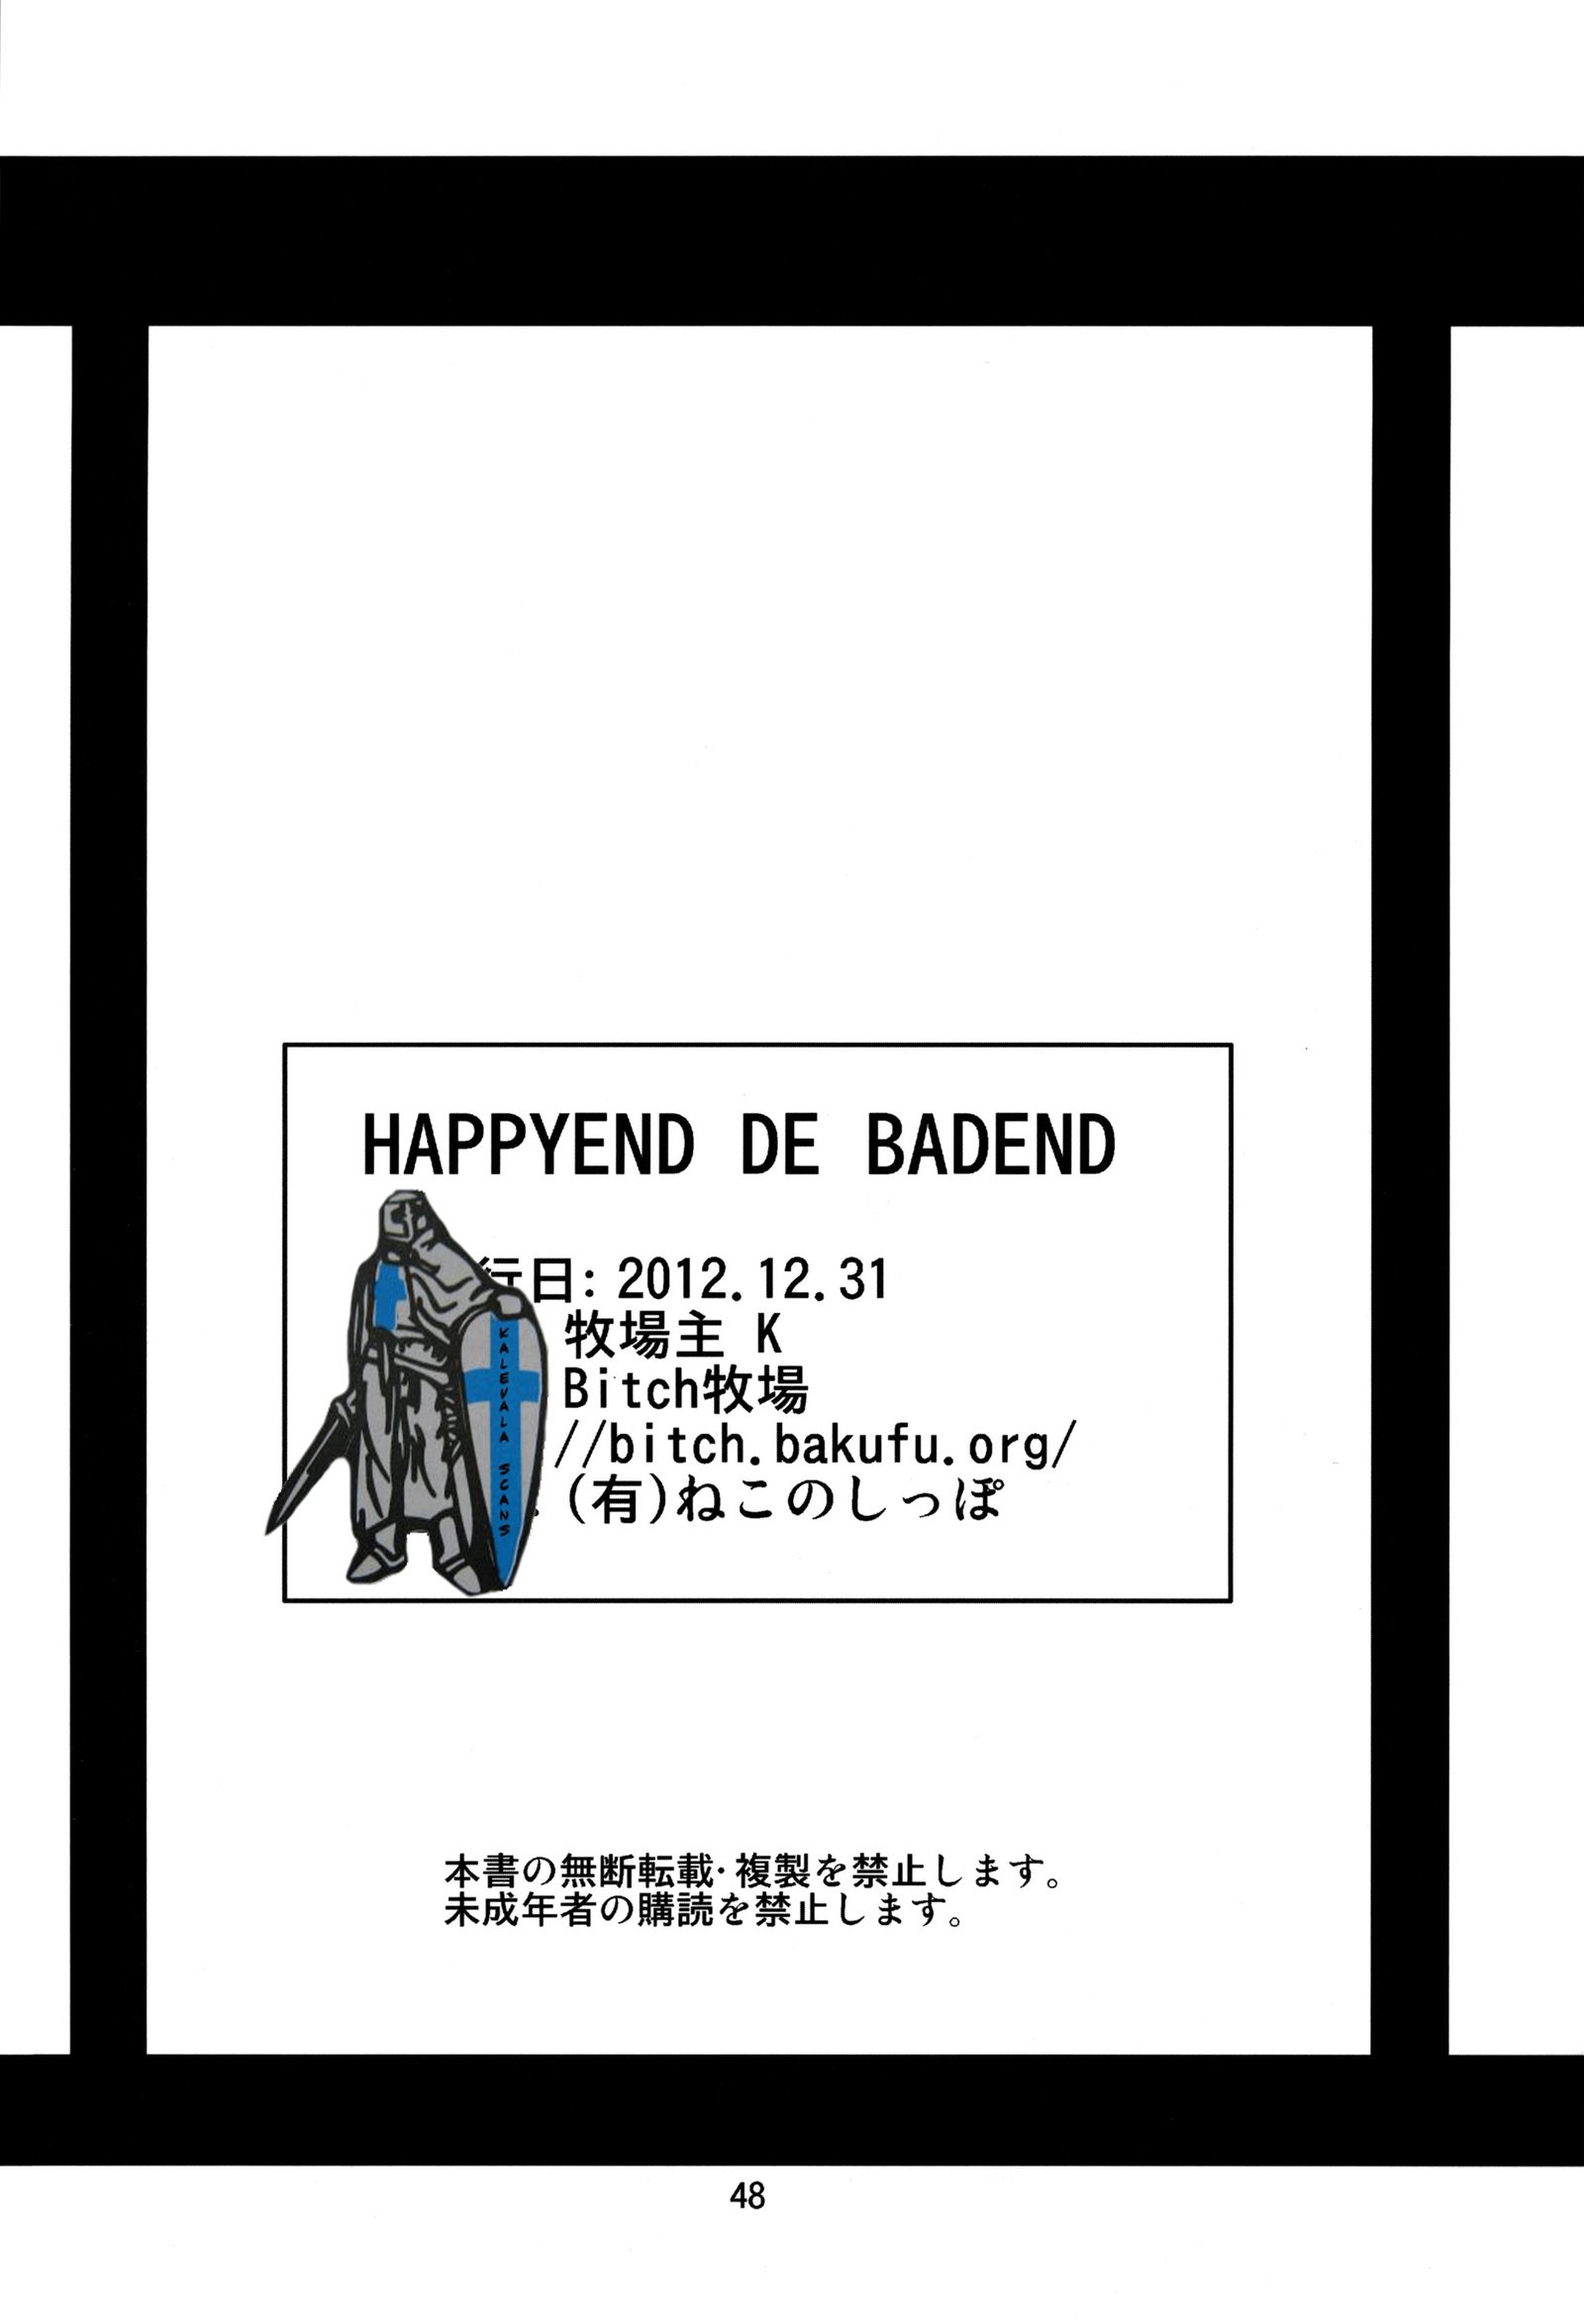 HAPPYEND DE BADEND